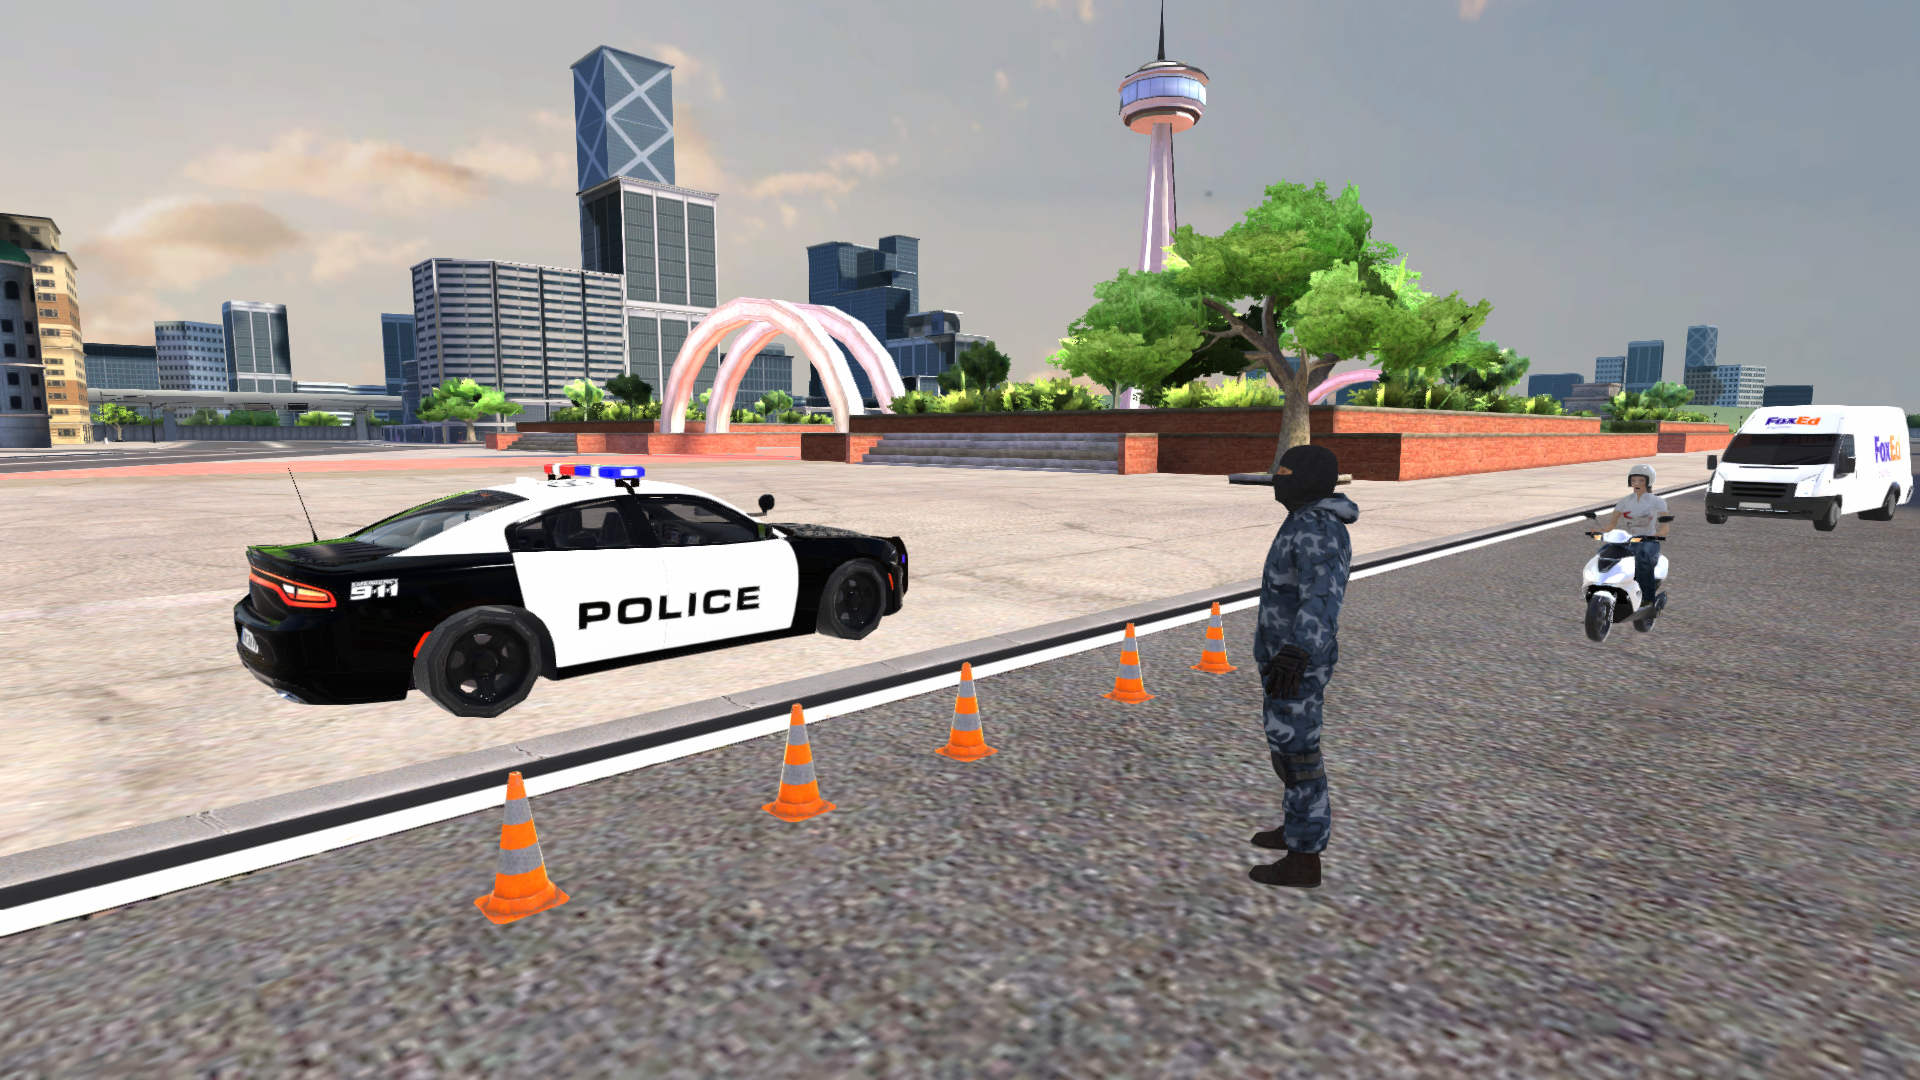 Police Vehicles Quad Simulatorのキャプチャ